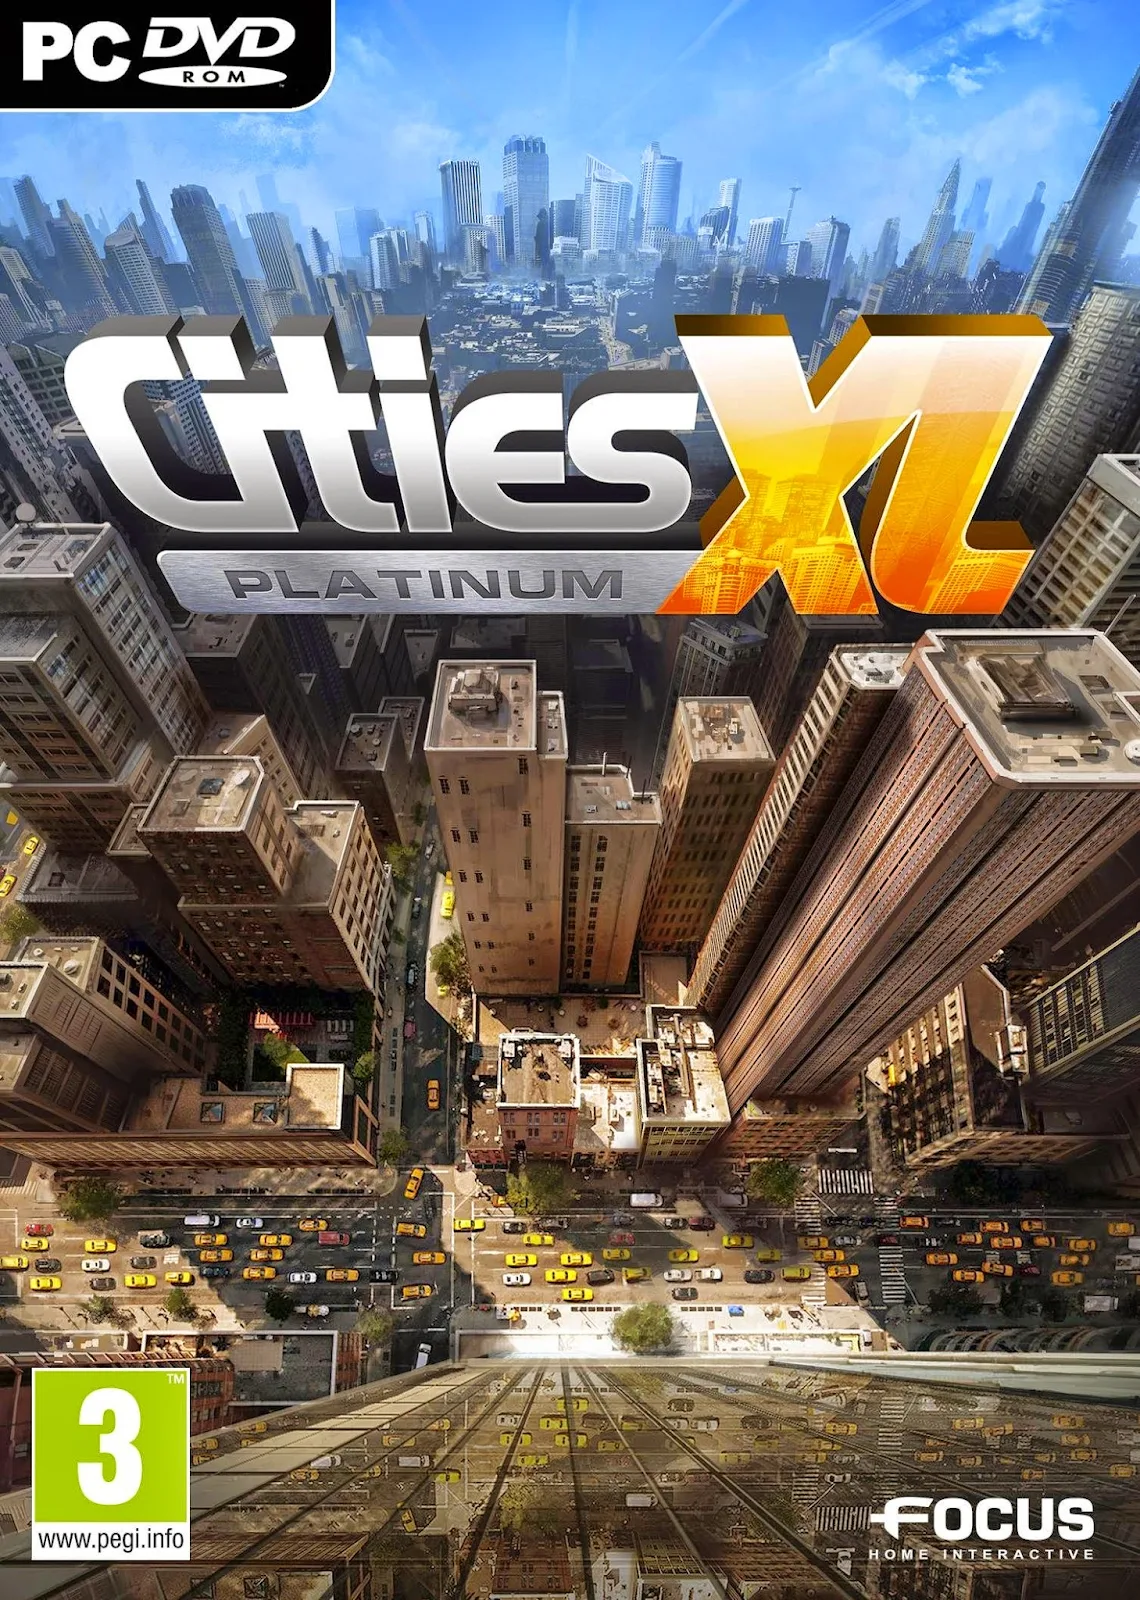 CITIES XL PLATINUM MULTI7 - PC GAME